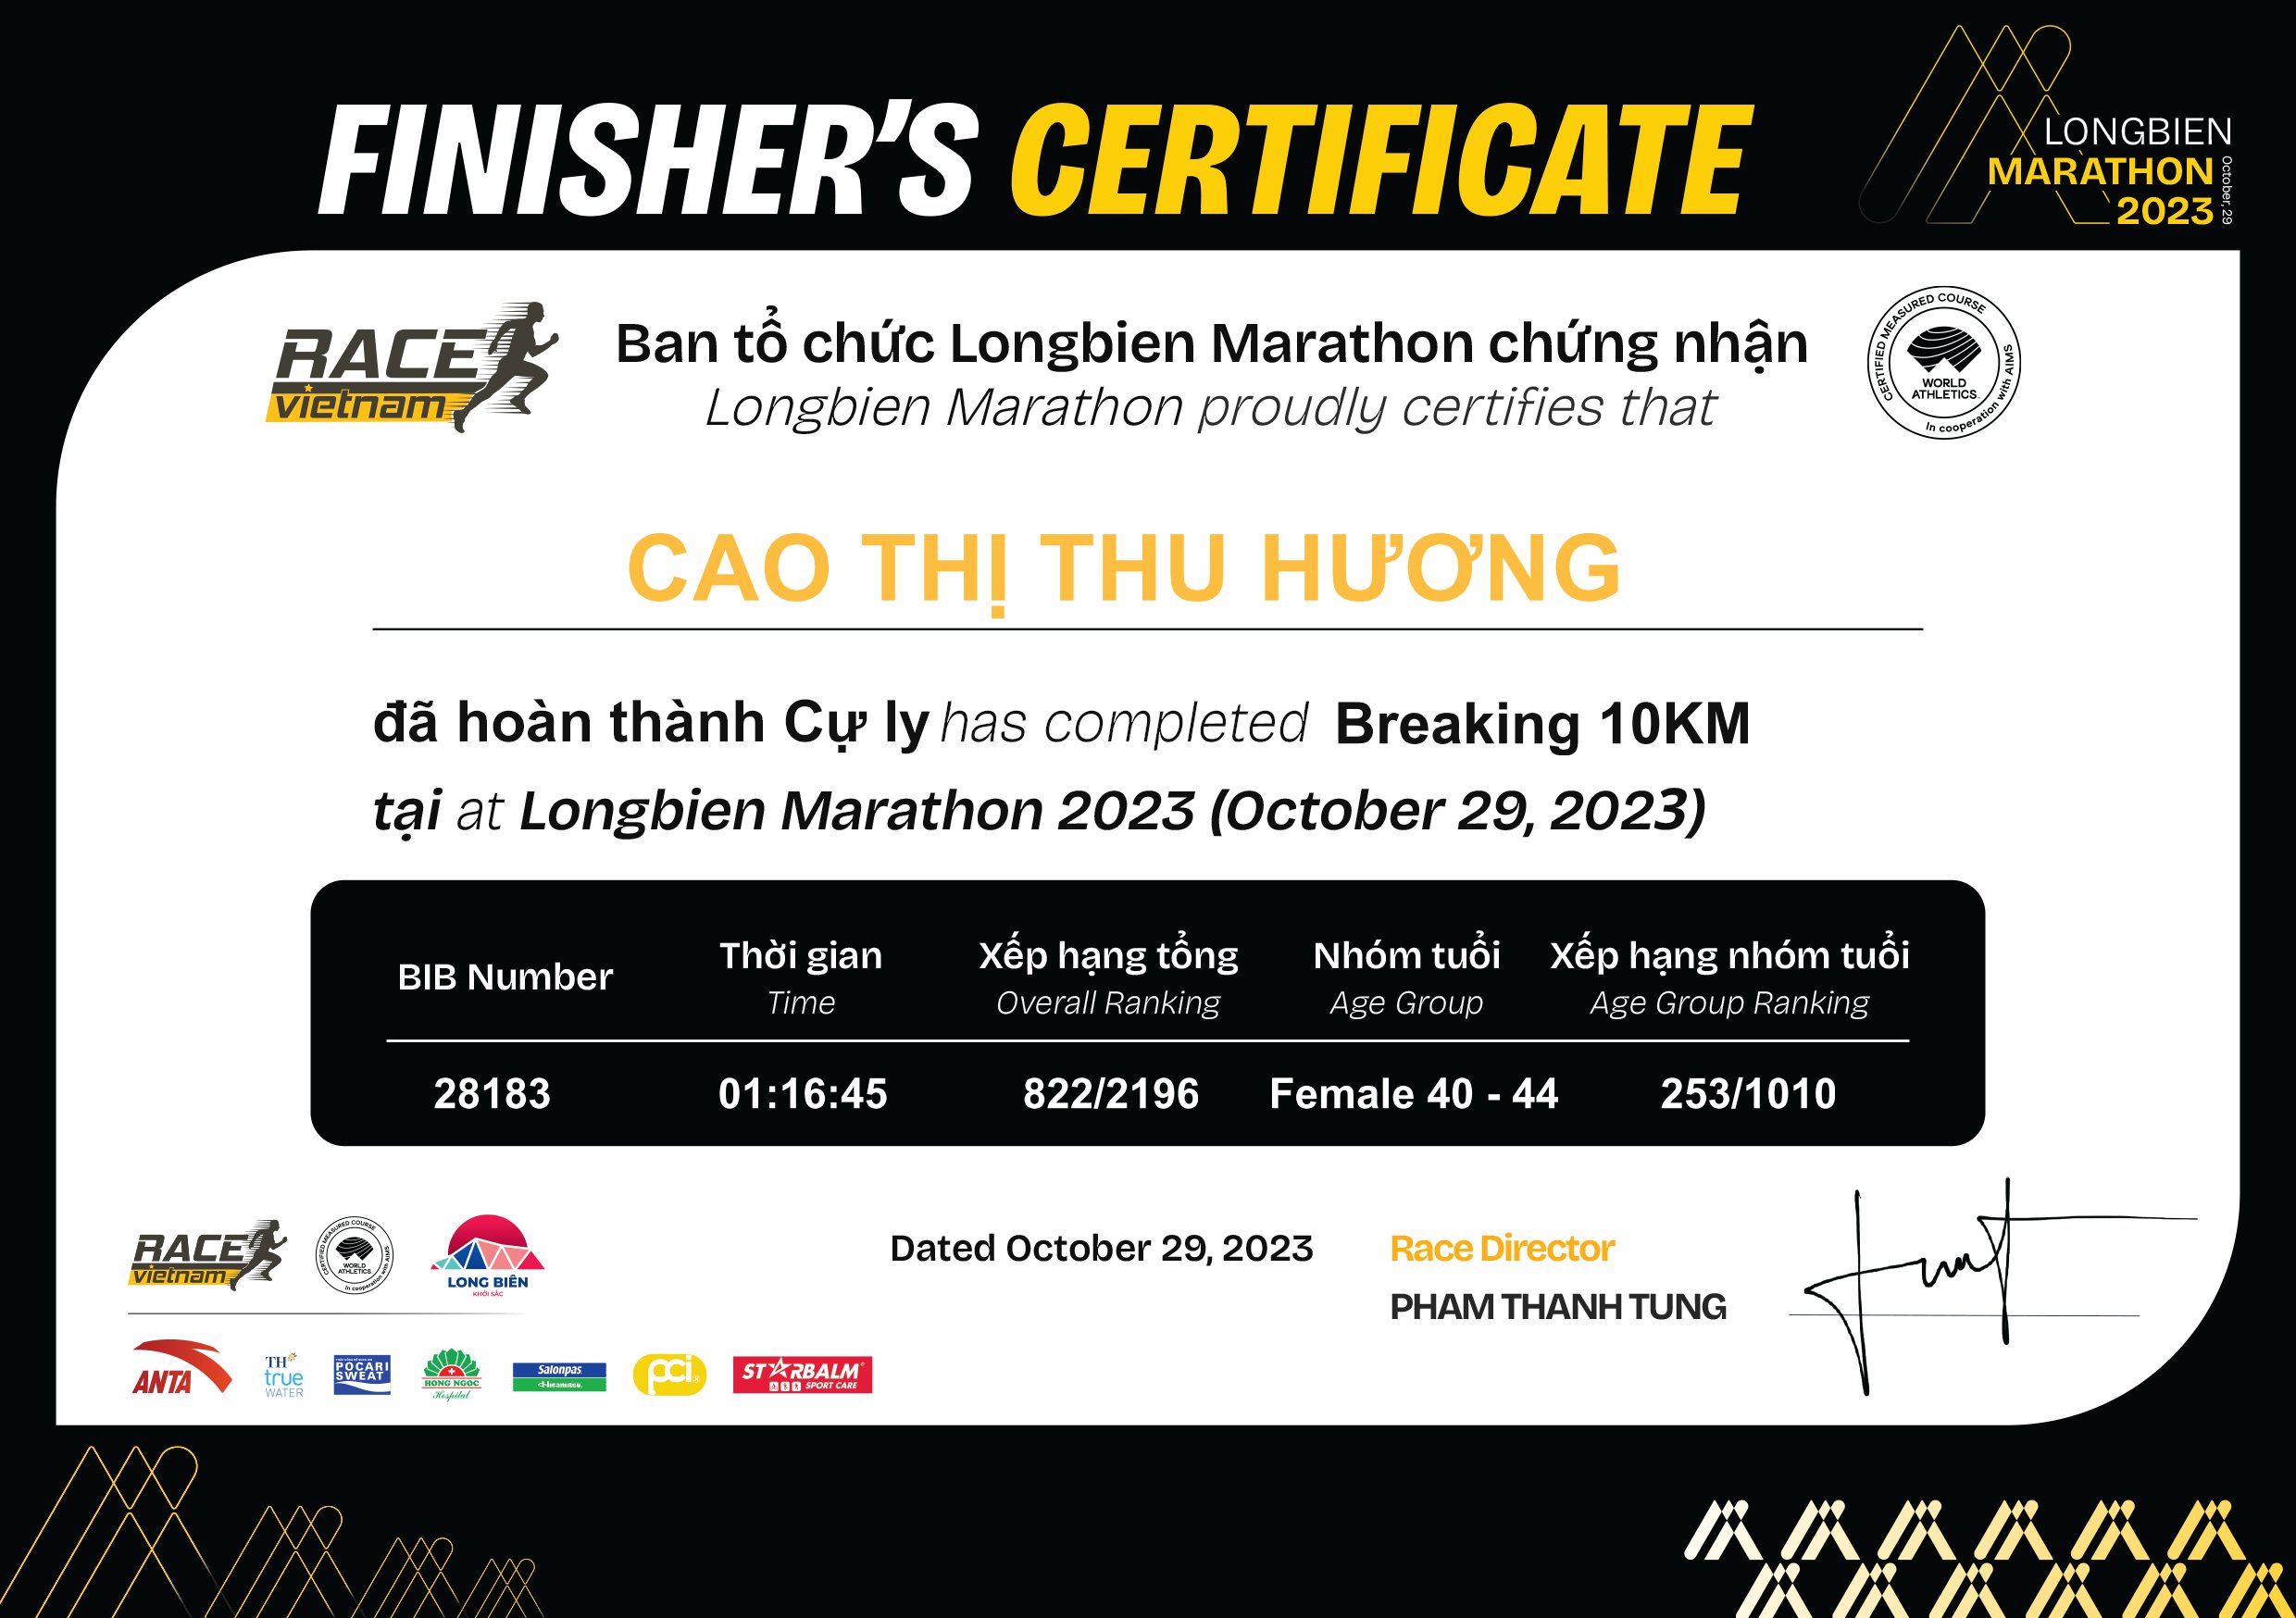 28183 - Cao Thị Thu Hương